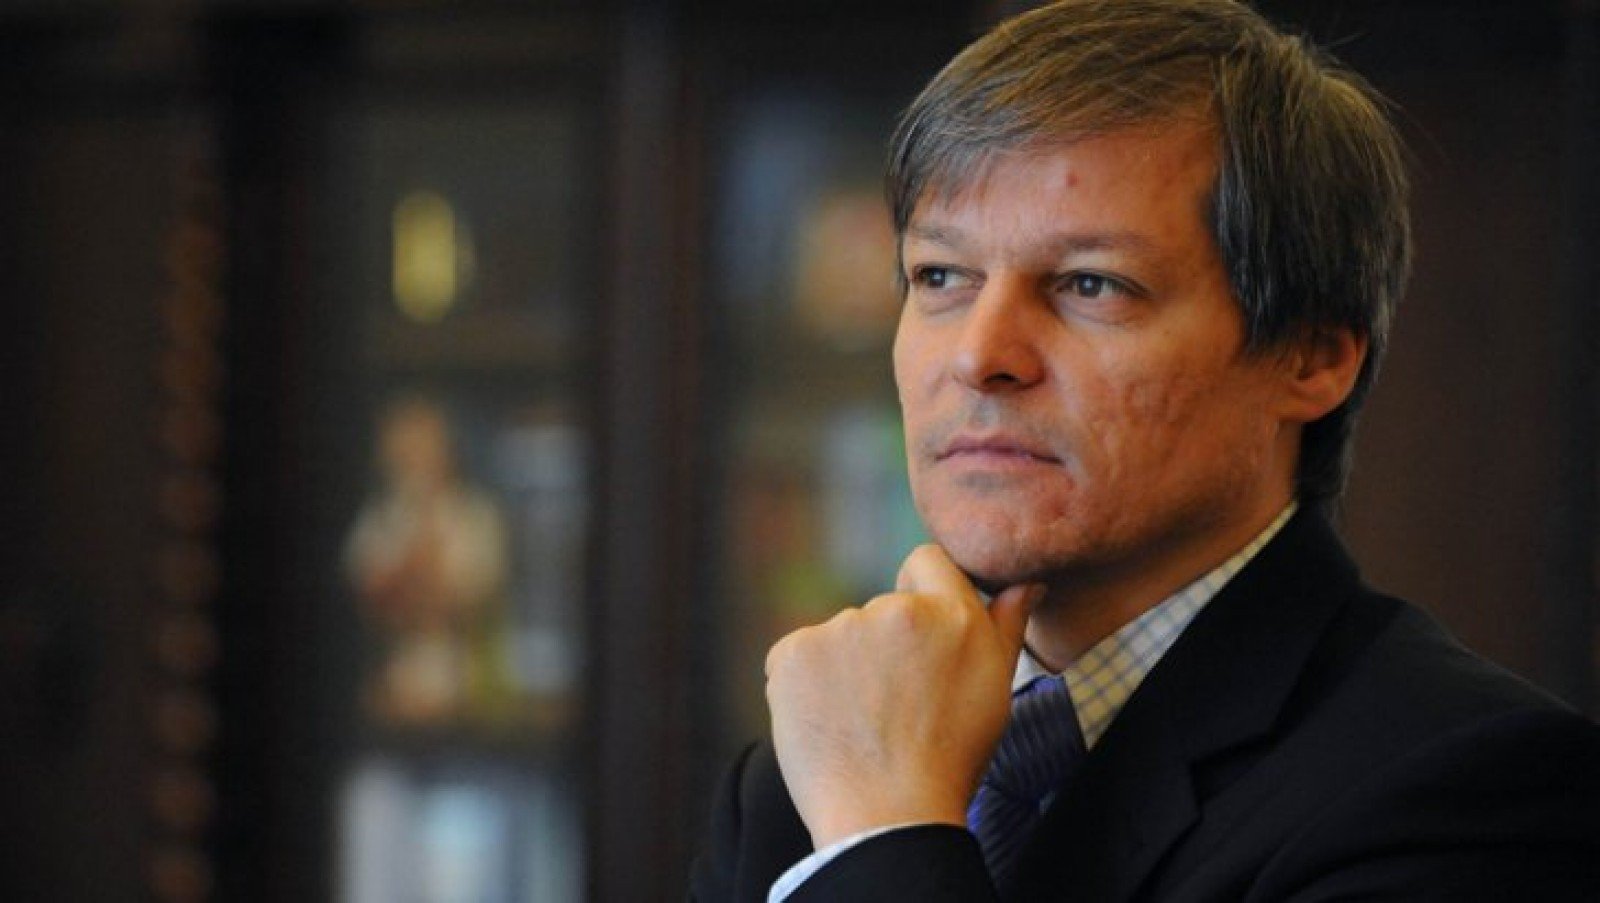 Dacian Cioloş: Ciolacu şi Firea să-l oprească din acţiunile ilegale pe colegul de partid şef de sindicat la STB